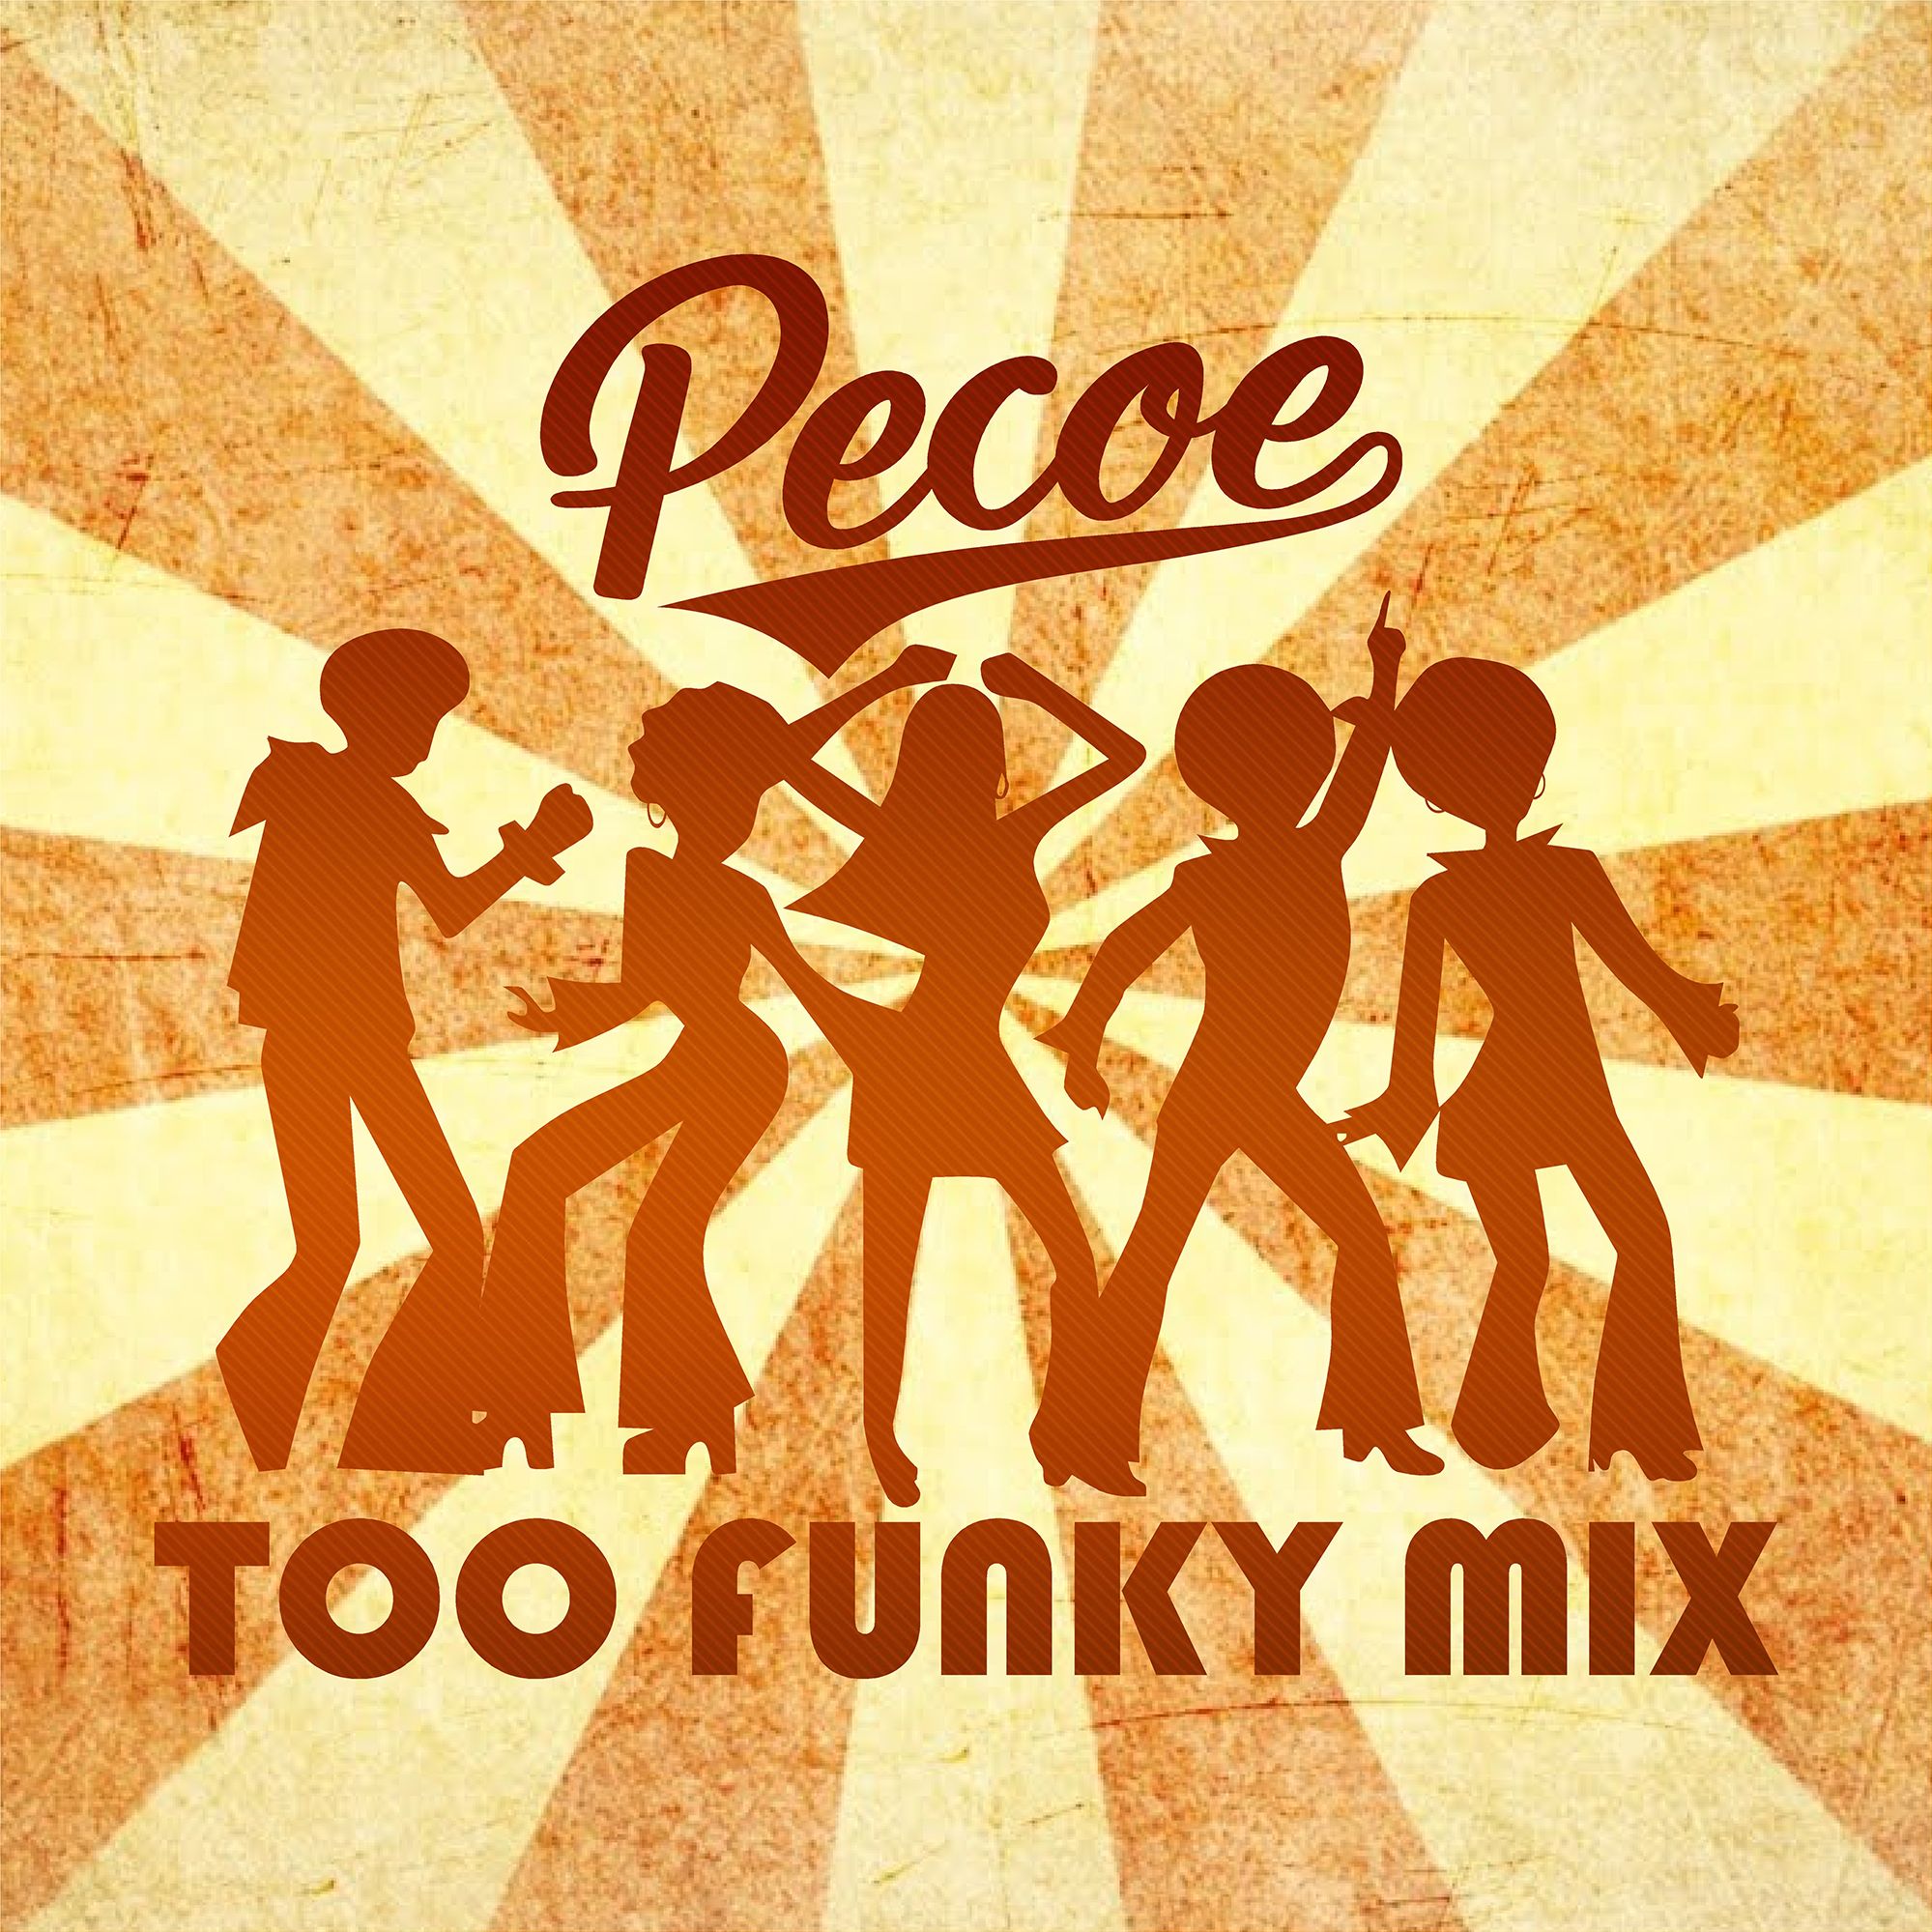 डाउनलोड करा Pecoe - Too Funky Mix